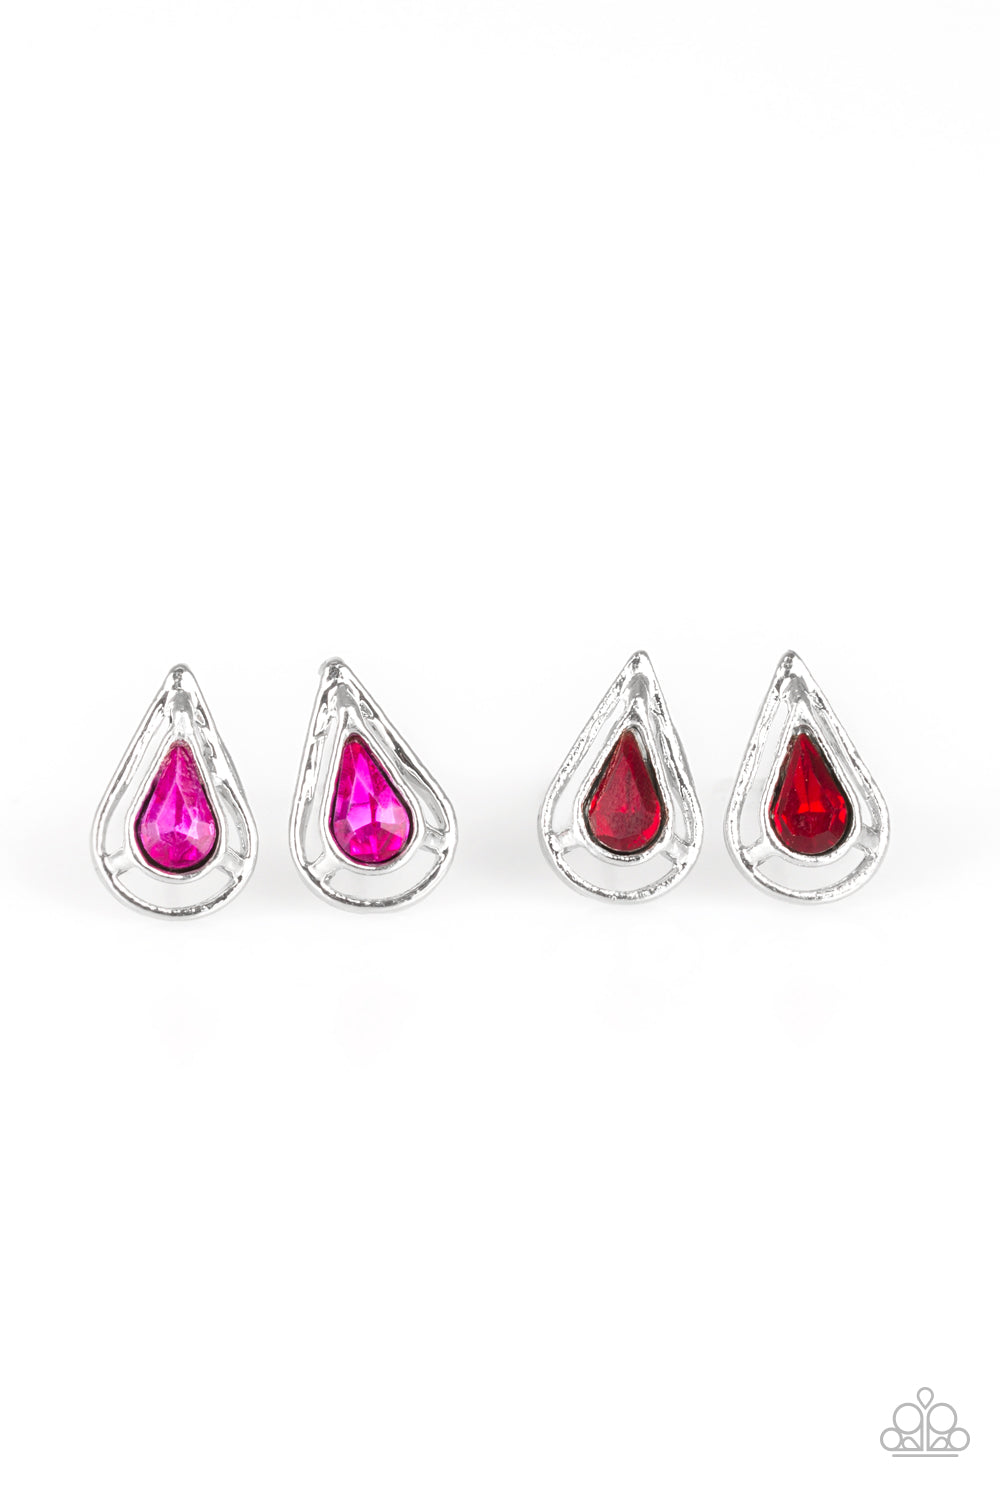 Starlet Shimmer Earrings Teardrop Post Earrings - Susan's Jewelry Shop